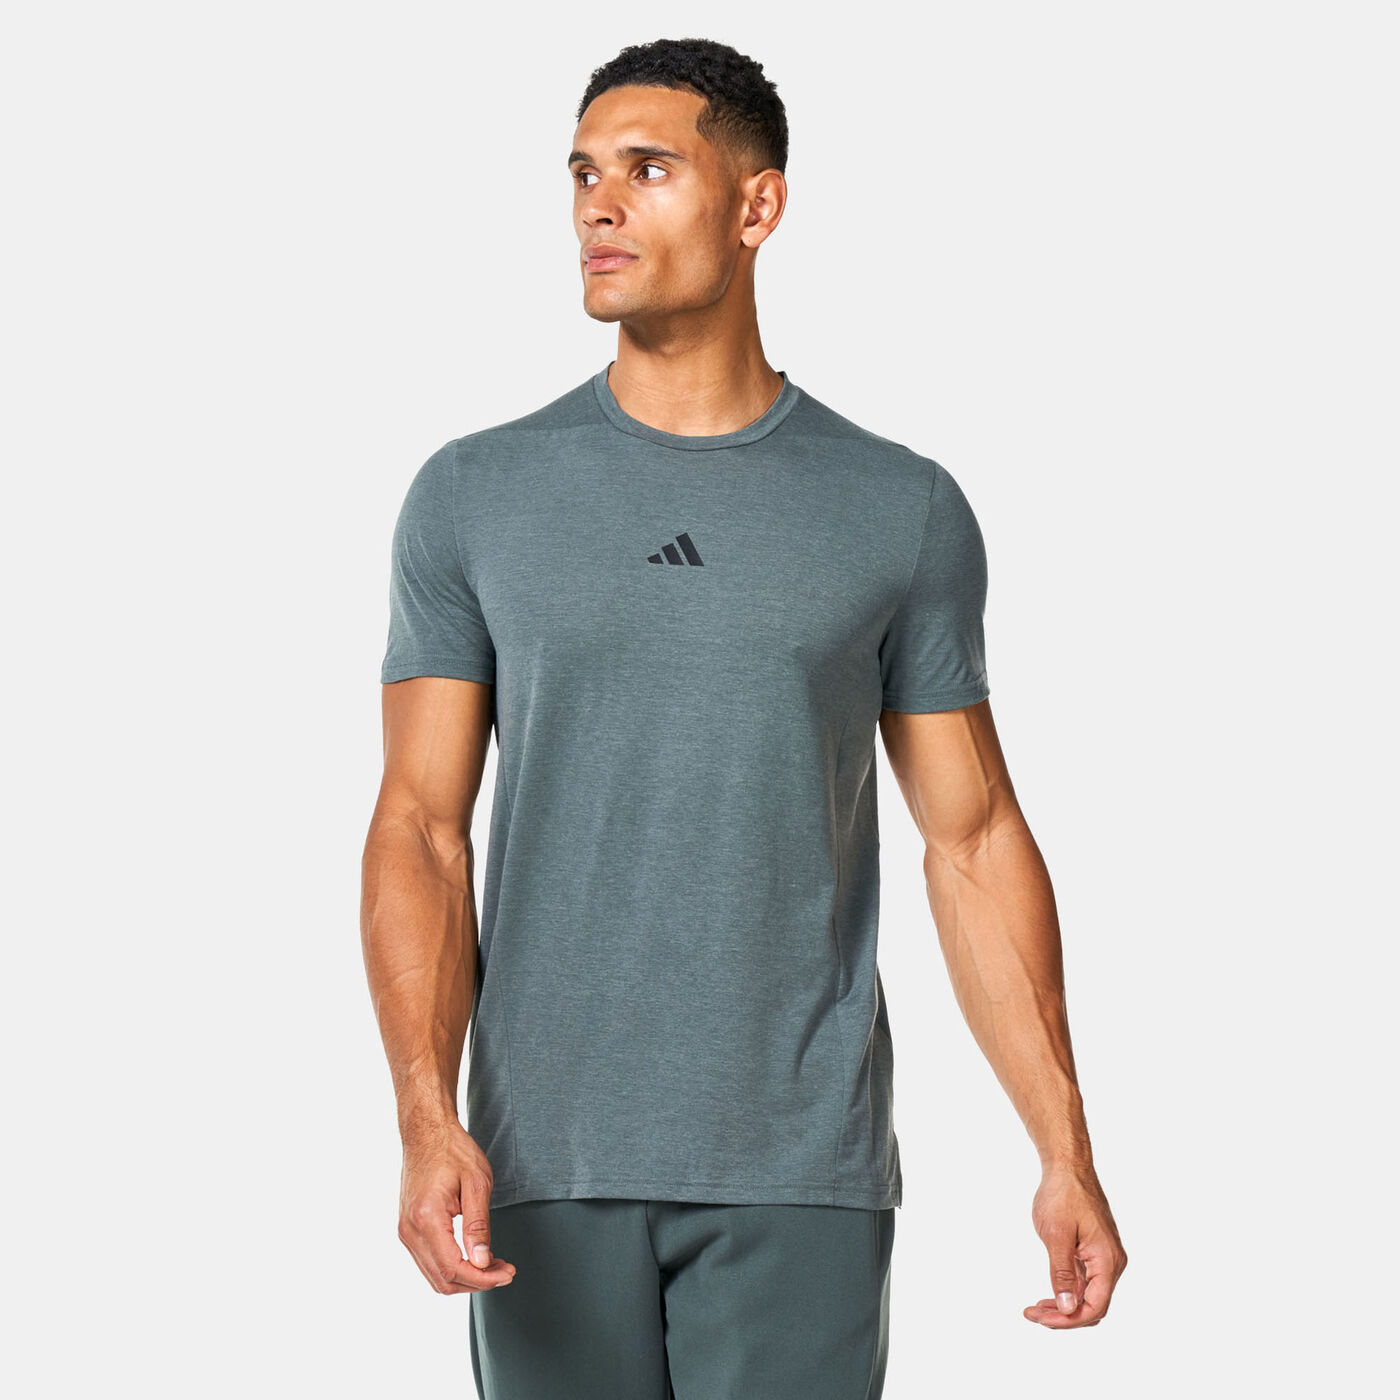 Men's Designed For Training T-Shirt